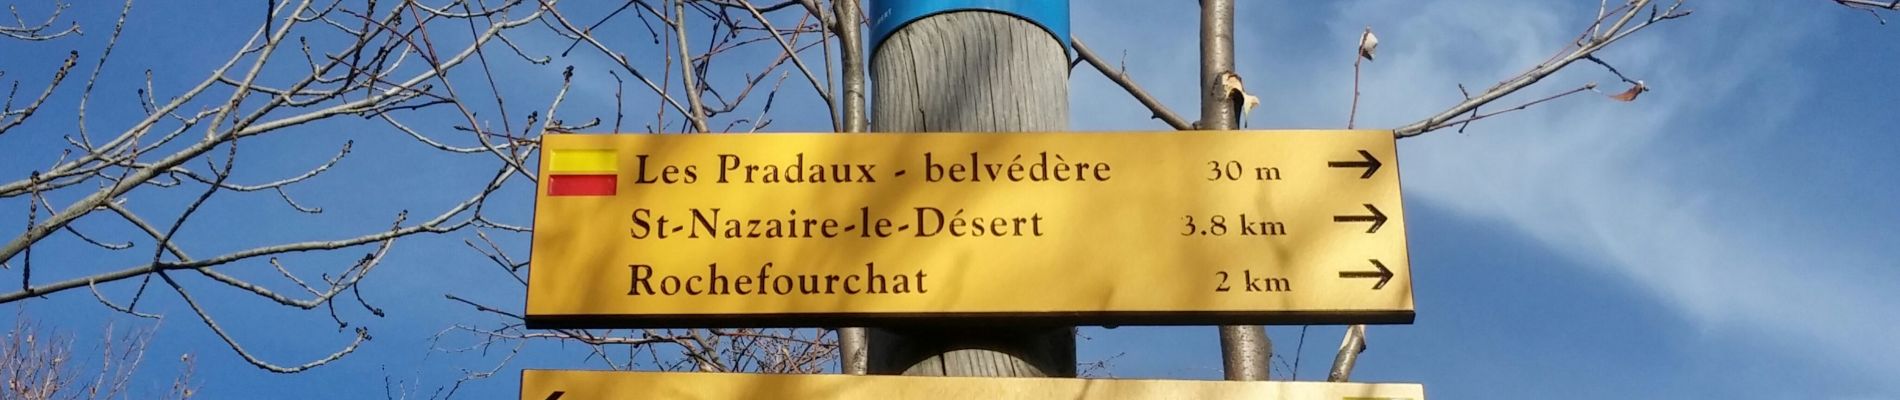 Randonnée Marche Saint-Nazaire-le-Désert - bergeries de pradaux saint Nazaire le désert - Photo